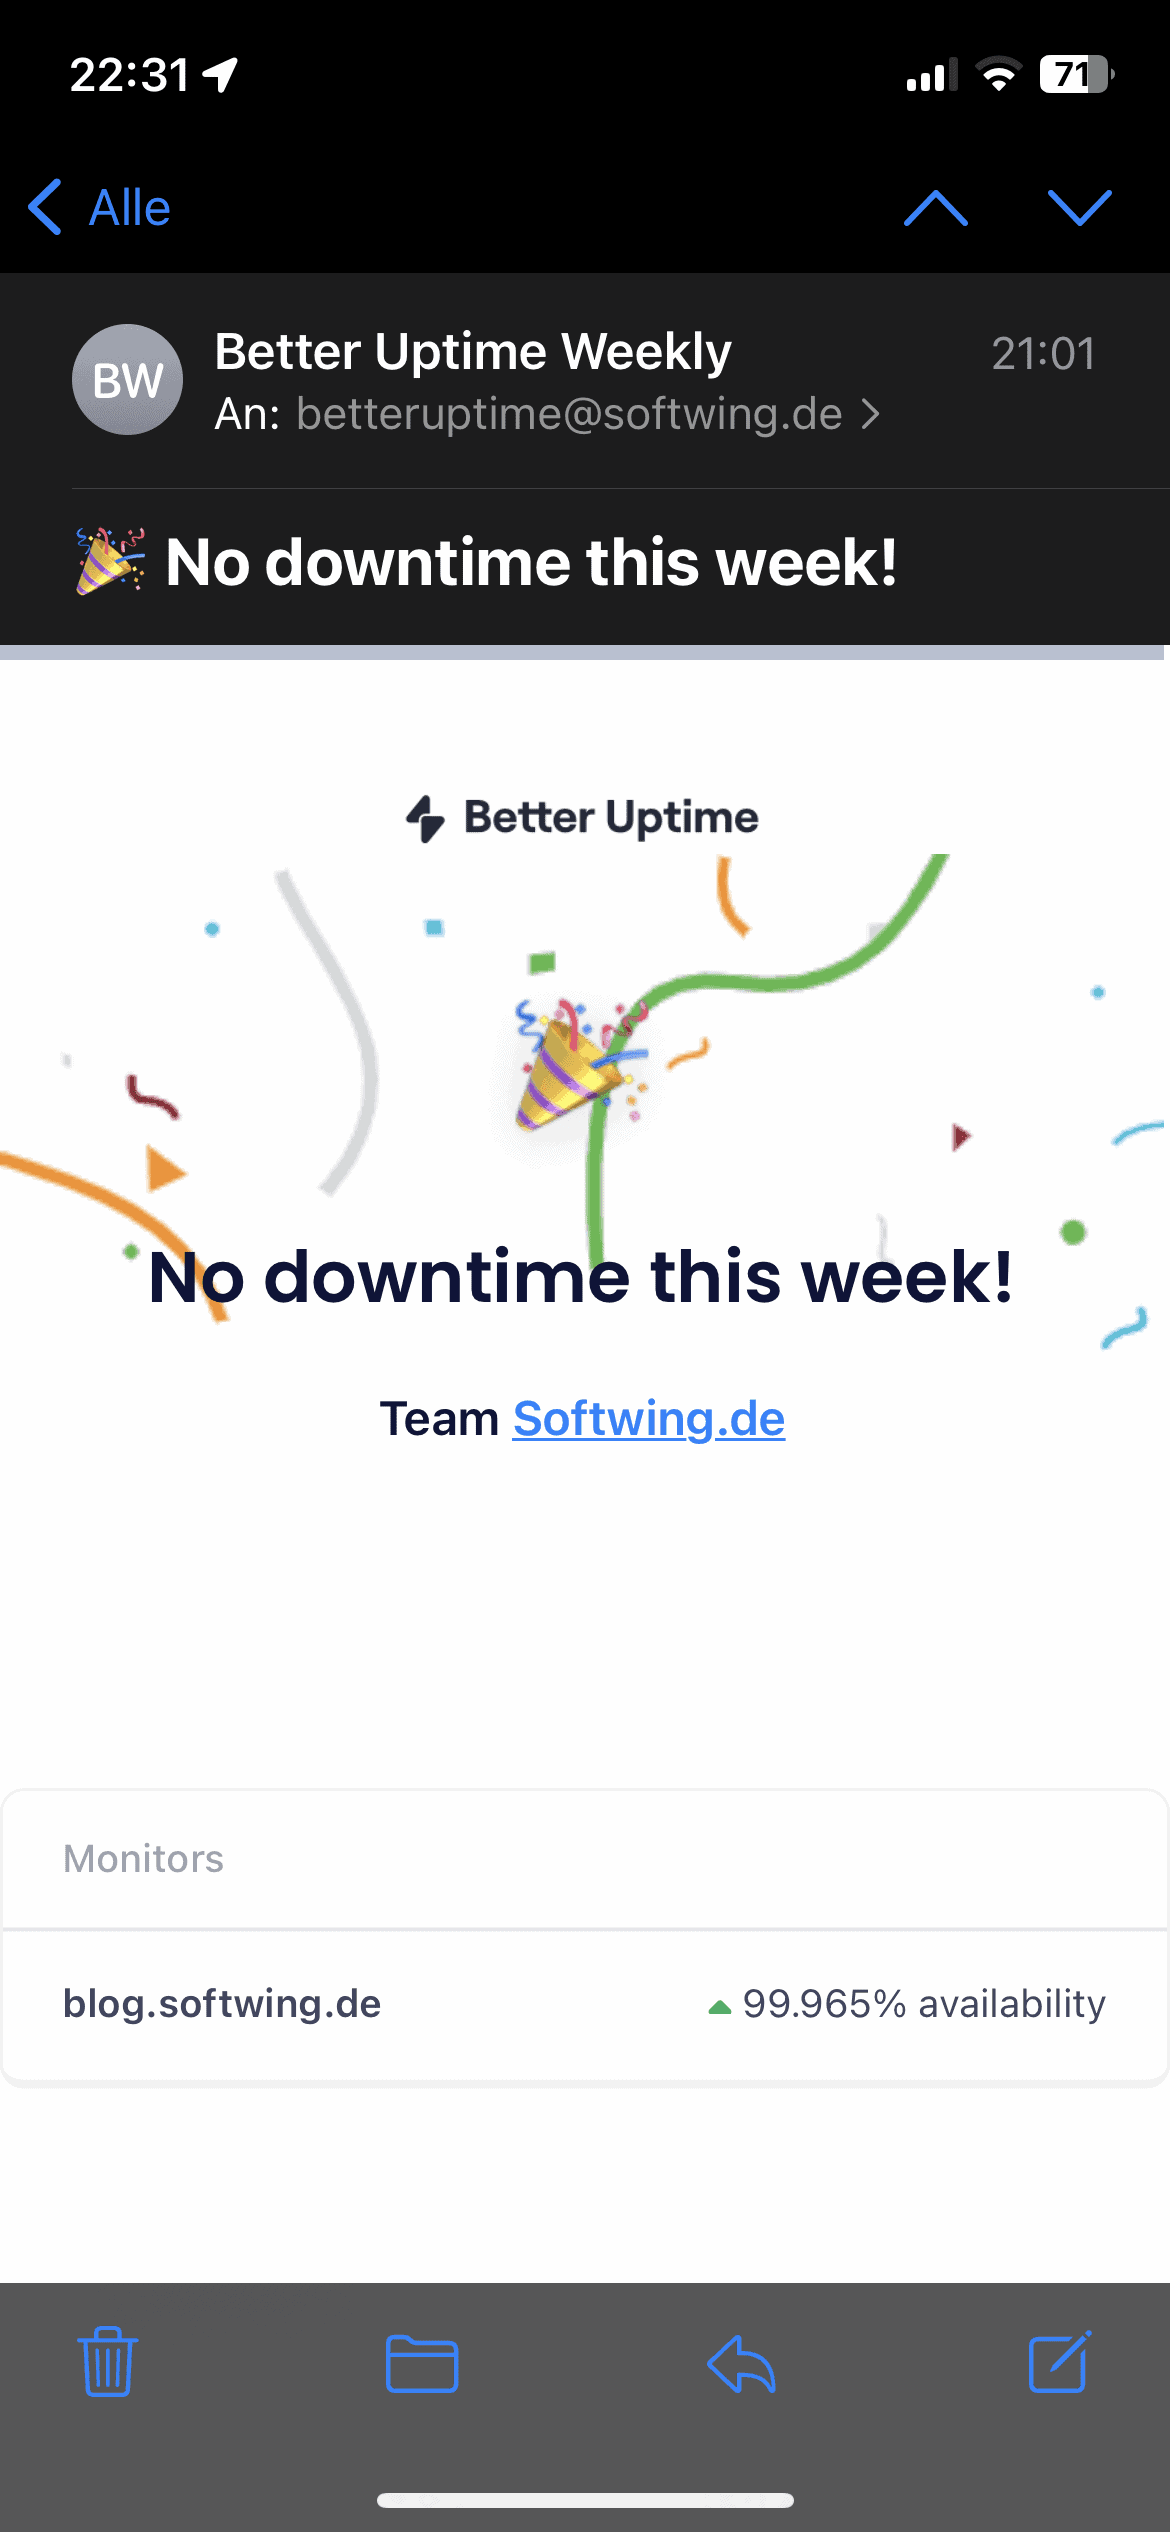 Mail von Better Uptime, dass das Blog diese Woche keine Downtime hatte.